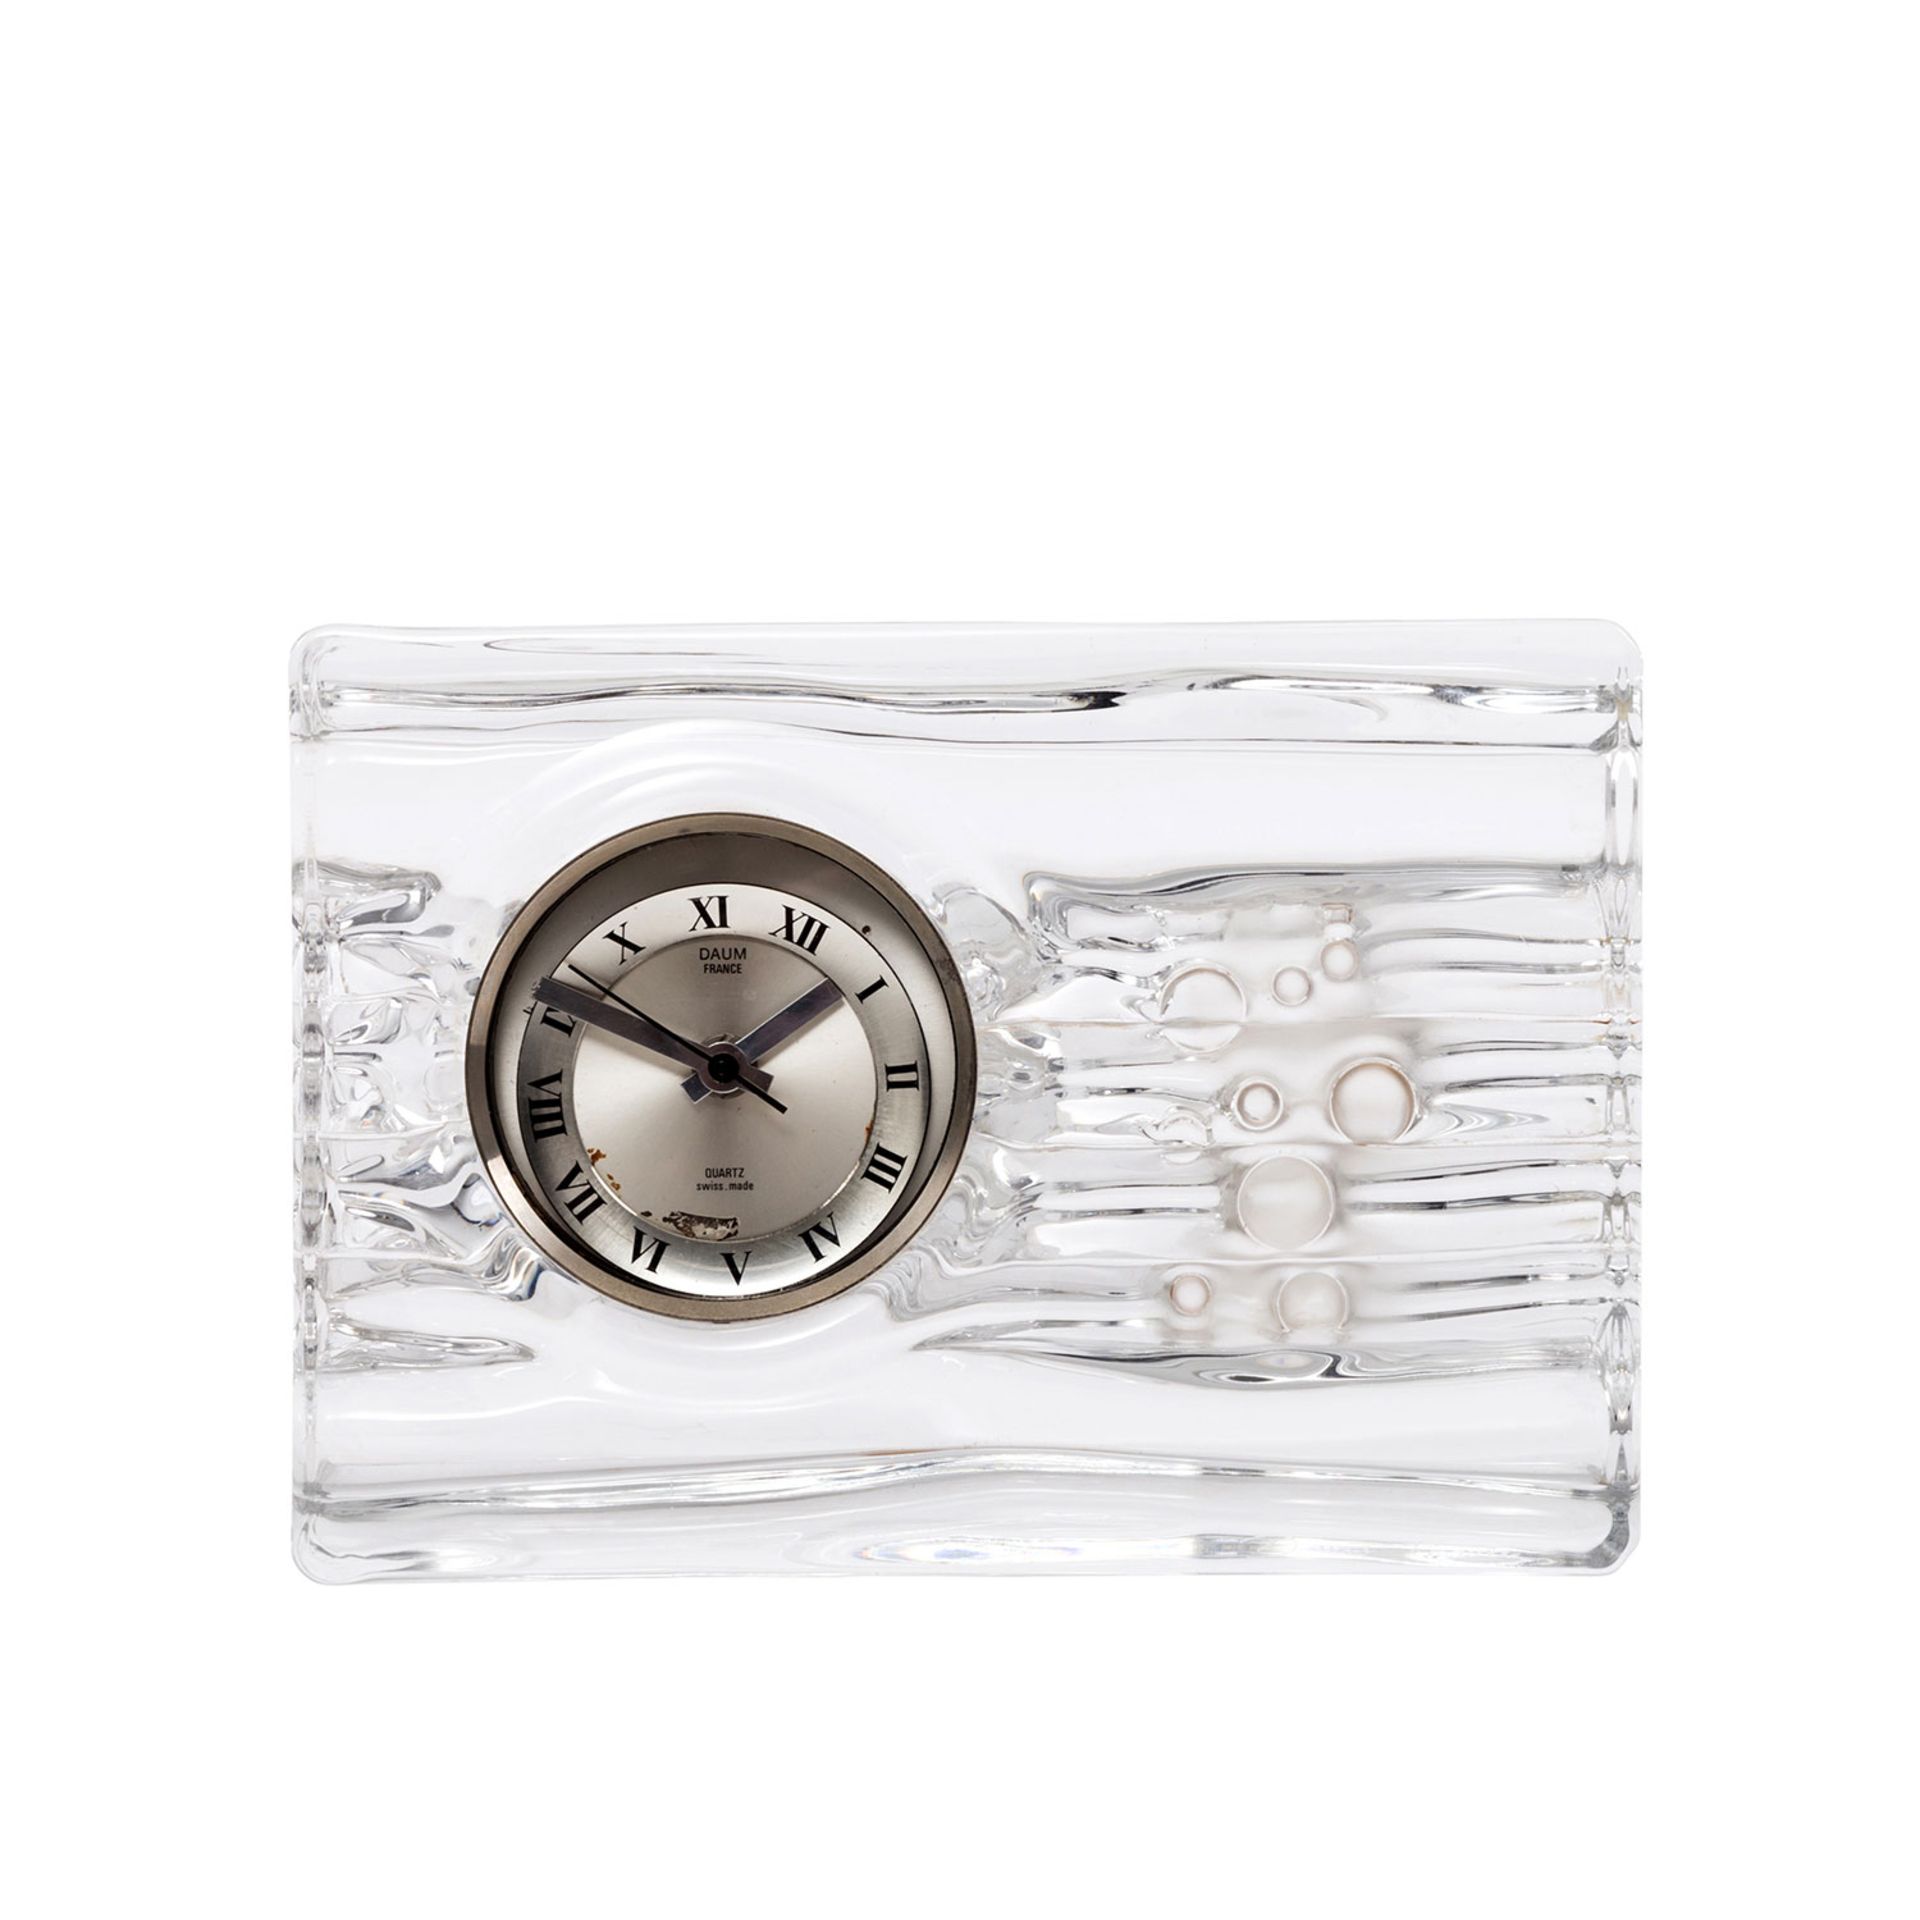 DAUM Quartz-Uhr, 20.Jh.quadratischer Glaskorpus mit eingesetzter Uhr, batteriebetrieben,